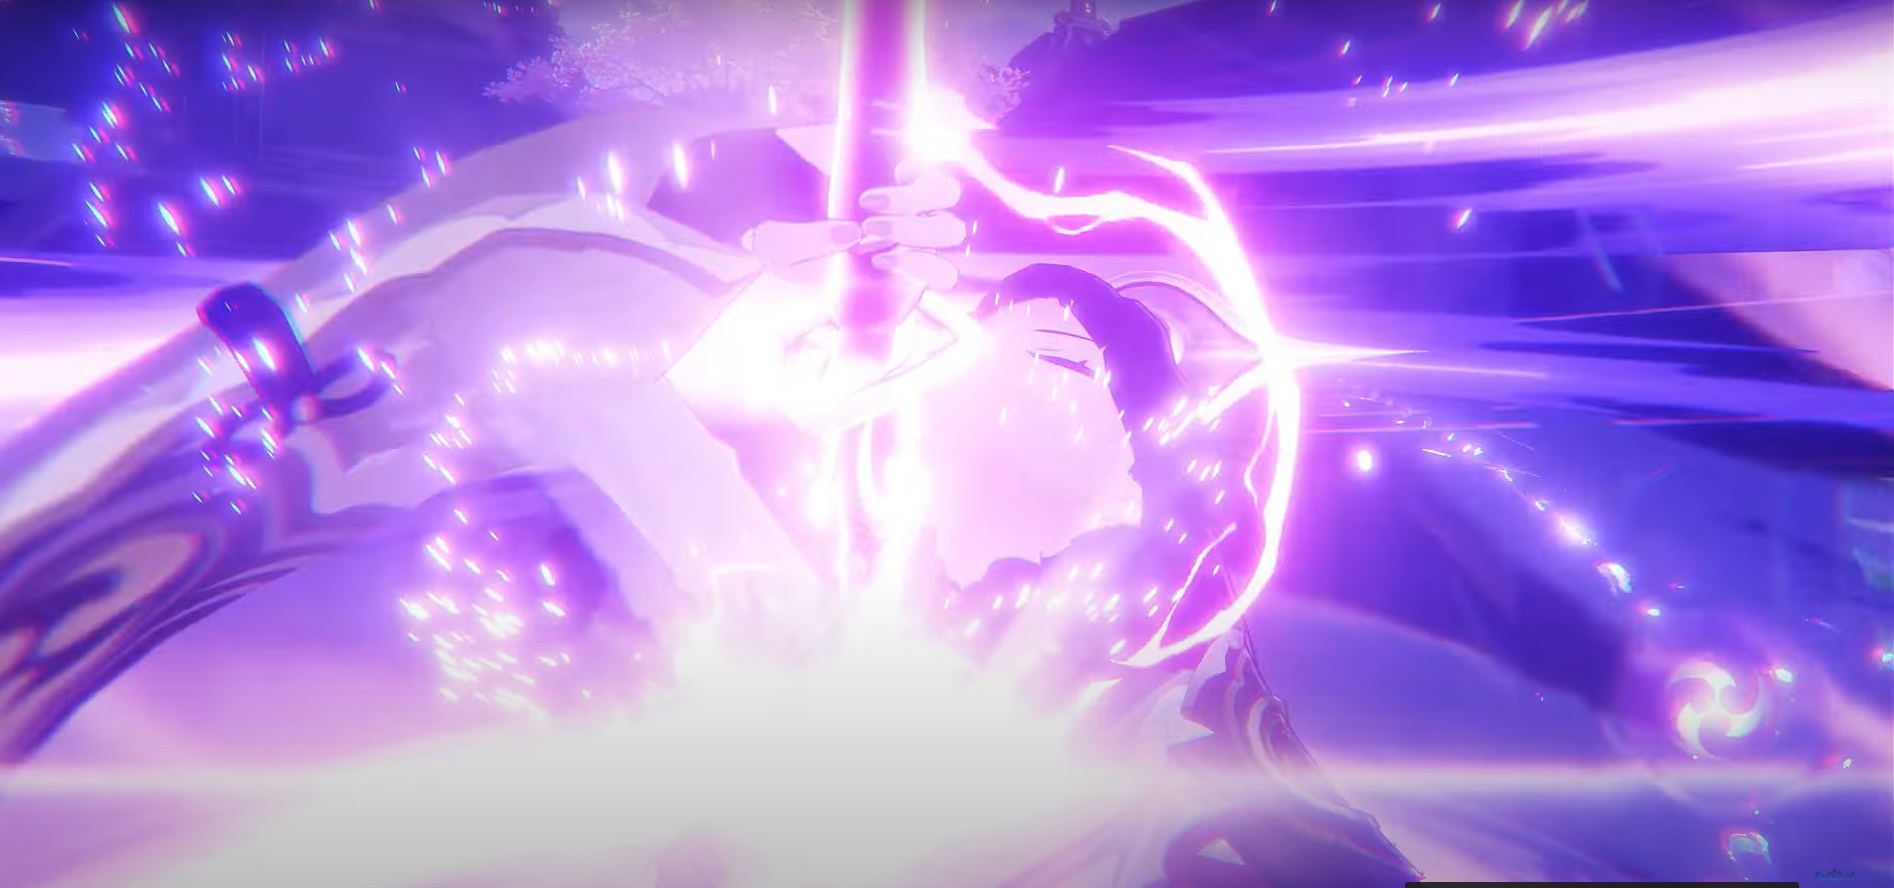 Lôi thần - Khám phá một trong những vị thần mạnh mẽ nhất trong thế giới Genshin Impact với các hình ảnh về Lôi thần.